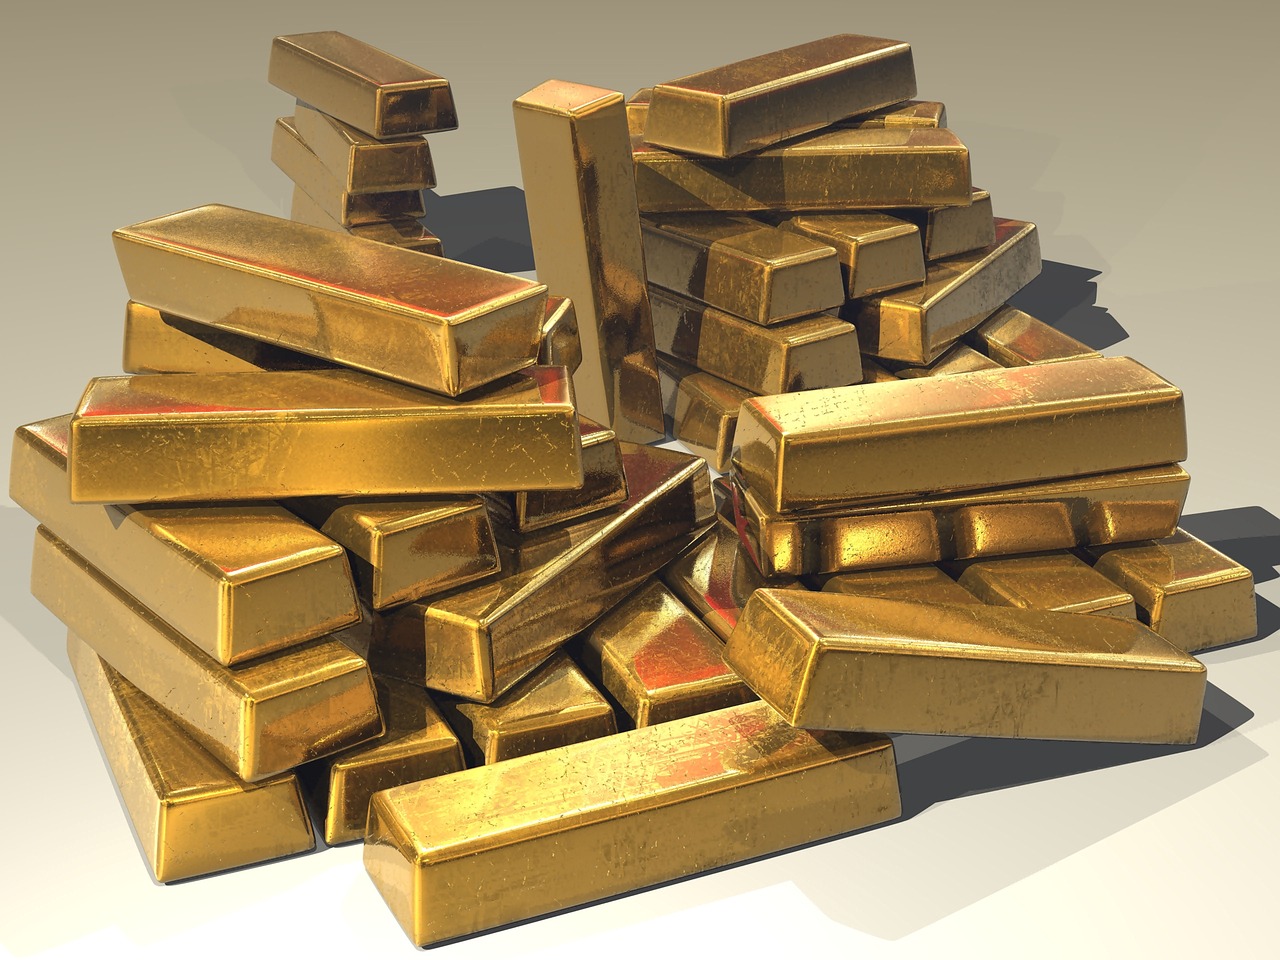 سعر الذهب اليوم في الامارات بيع وشراء